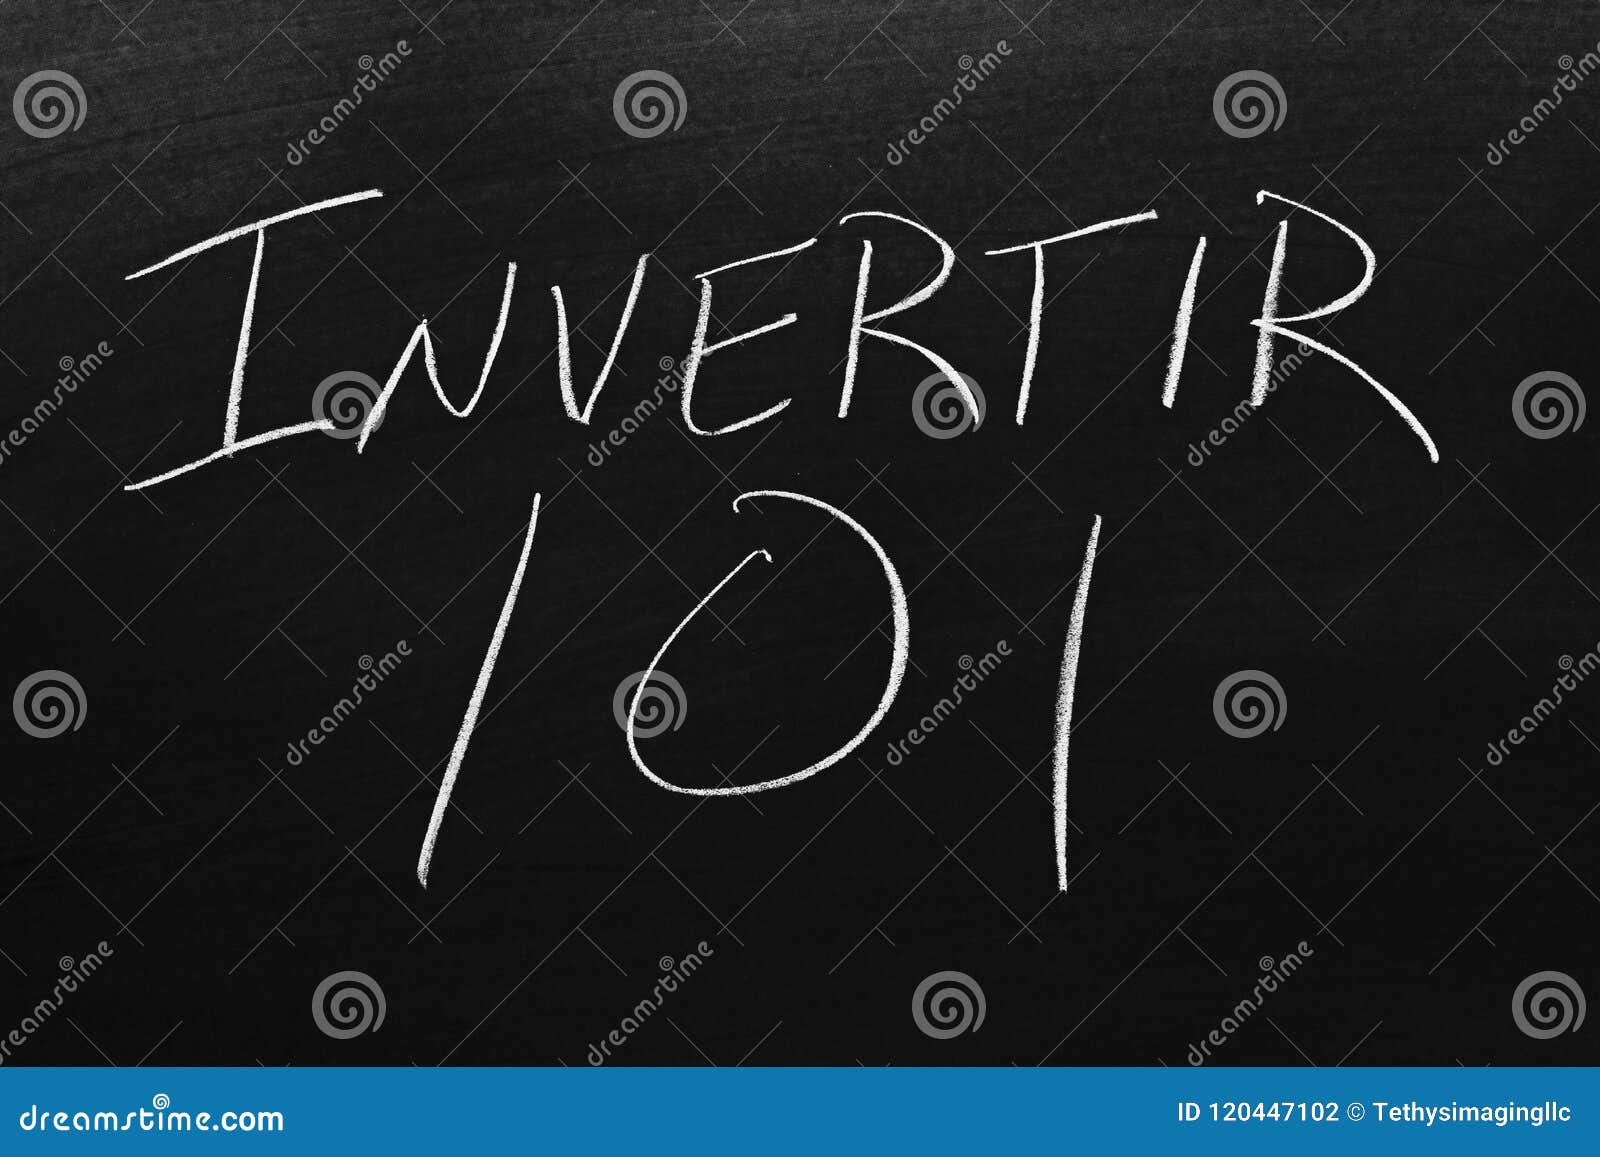 invertir 101 on a blackboard. translation: investing 101